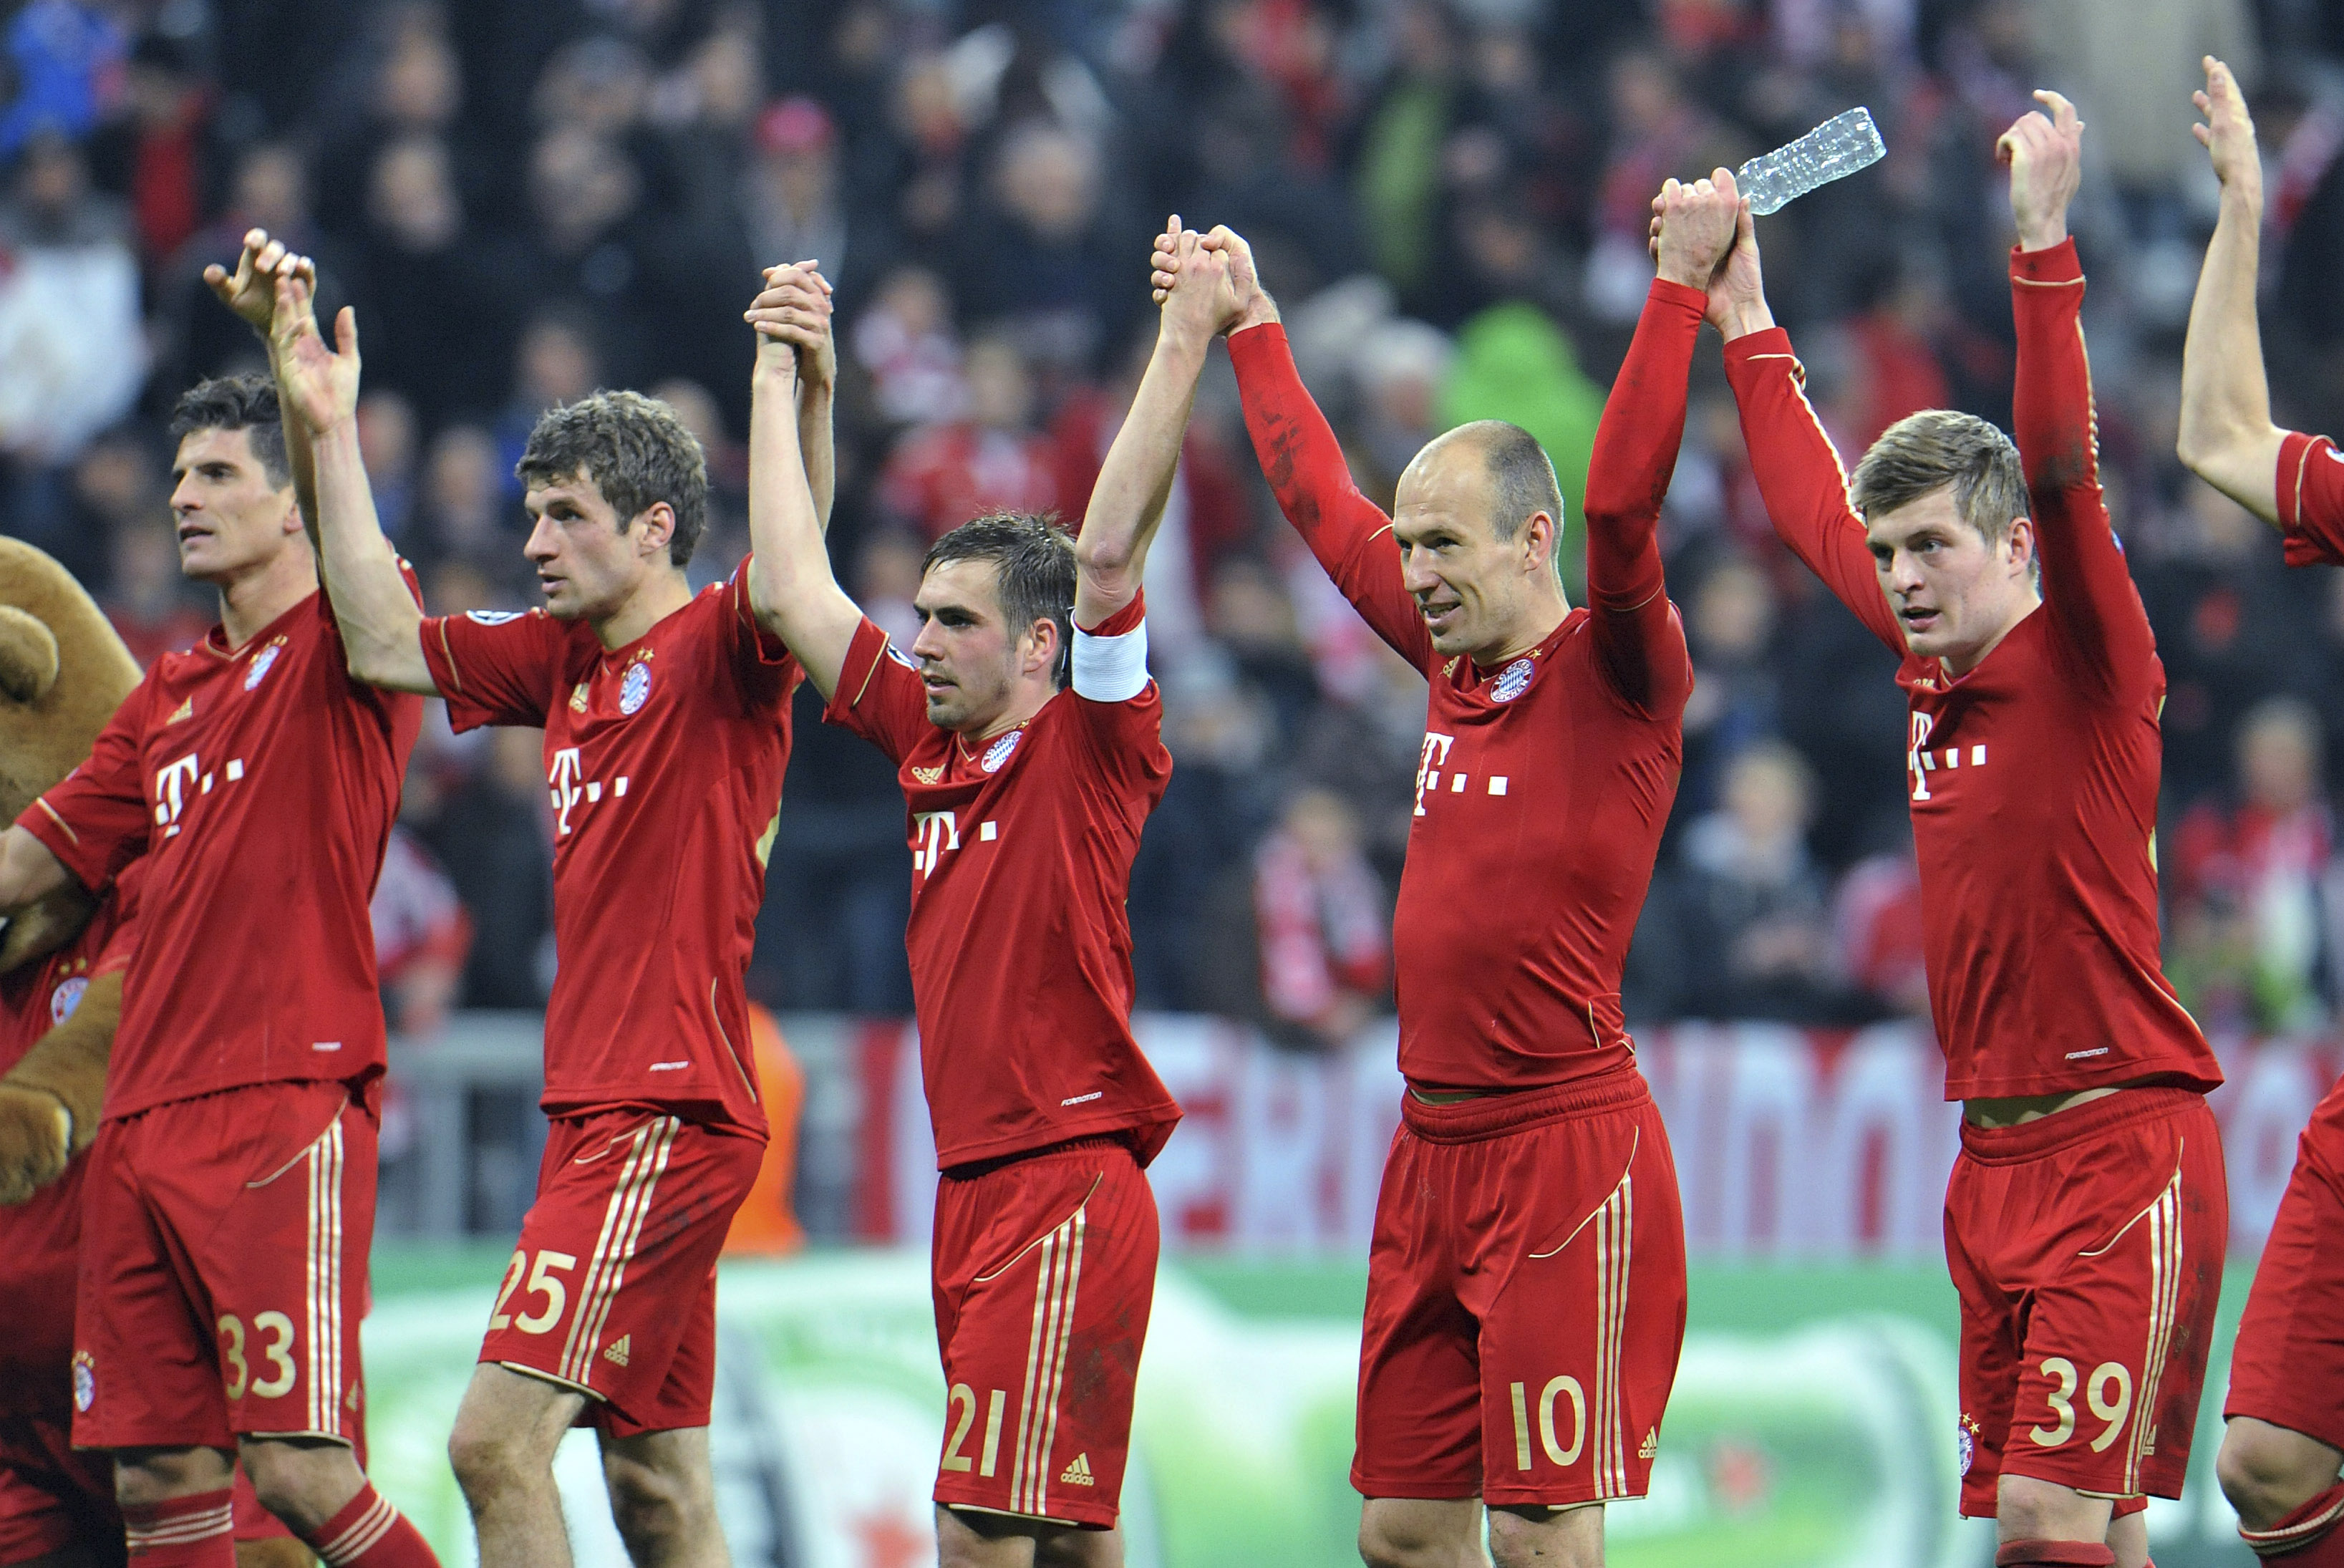 8. De tyska giganterna Bayern München ligger åtta på listan. Spelarna tjänar i snitt 40 miljoner kronor per år.